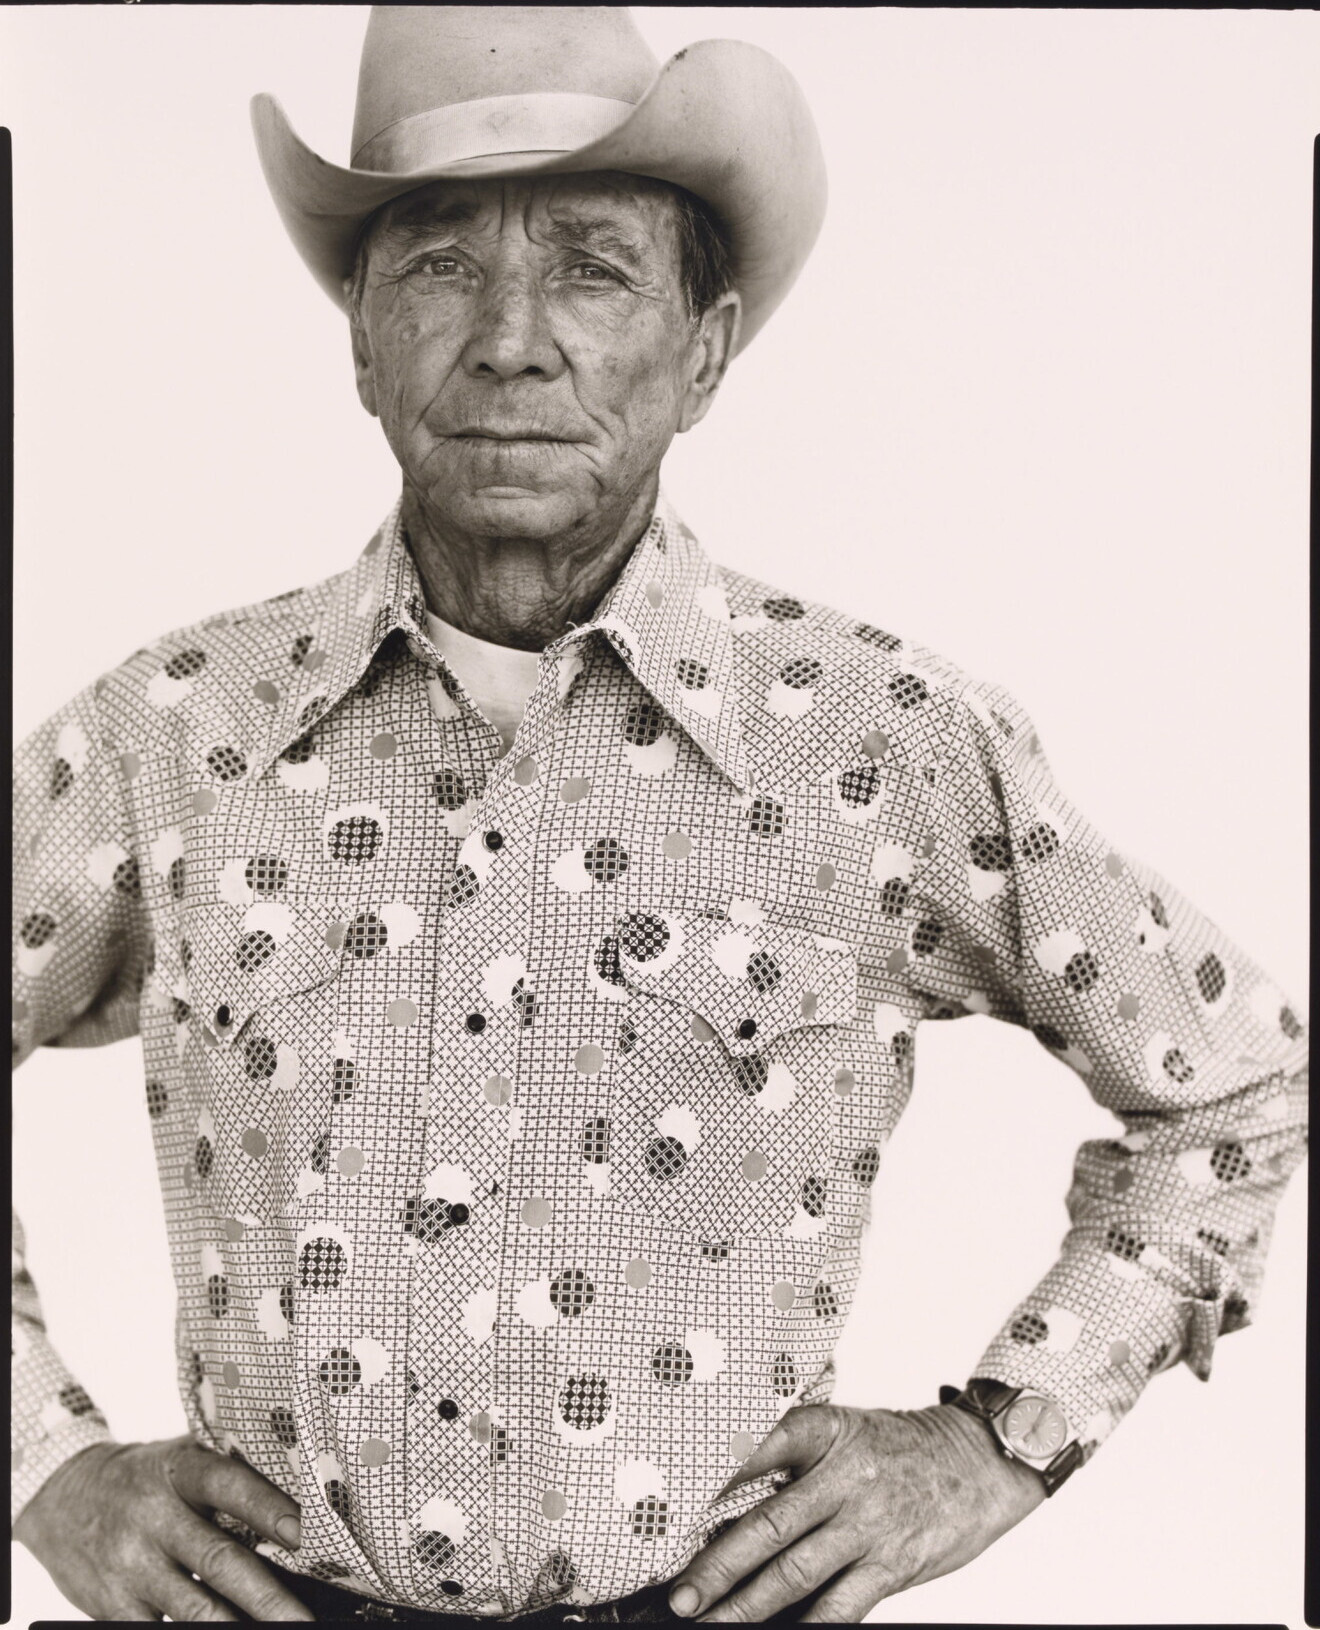 Уилбур Пауэлл, владелец ранчо, Эннис, Монтана, 1978 г. Фотограф Ричард Аведон